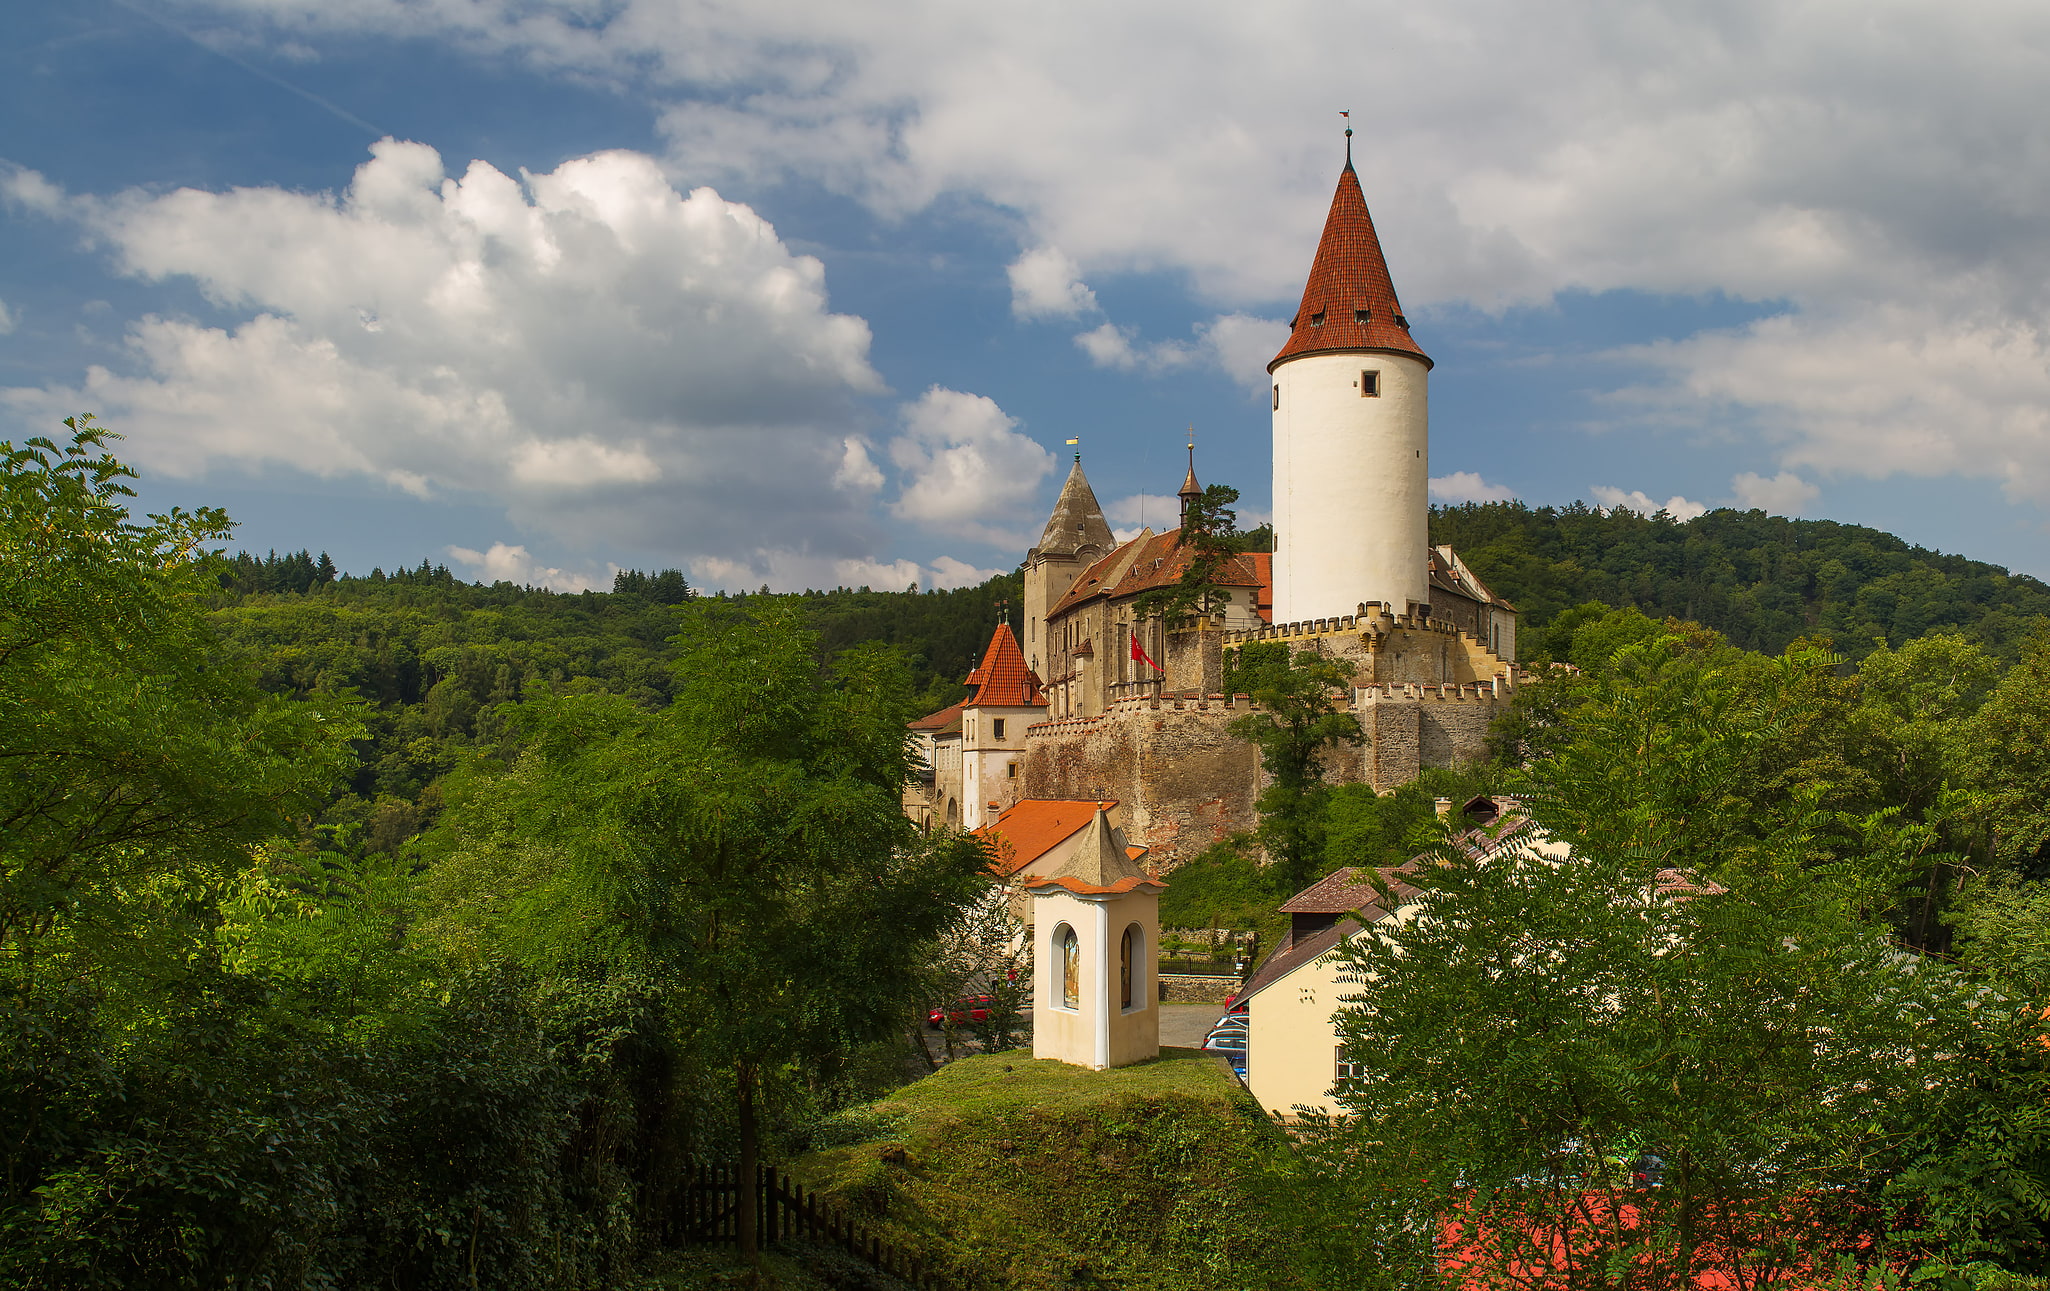 Křivoklát, Czech Republic